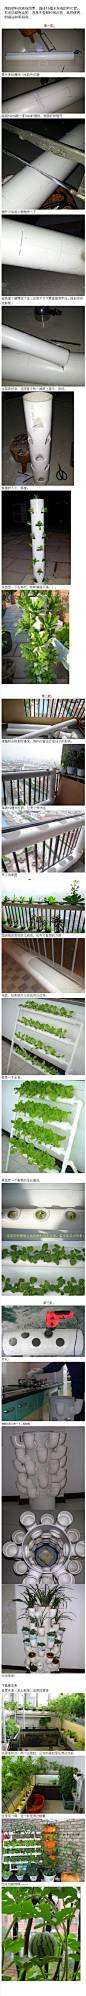 牛人用PVC管在阳台种蔬菜，绿色环保，太有创意了！！